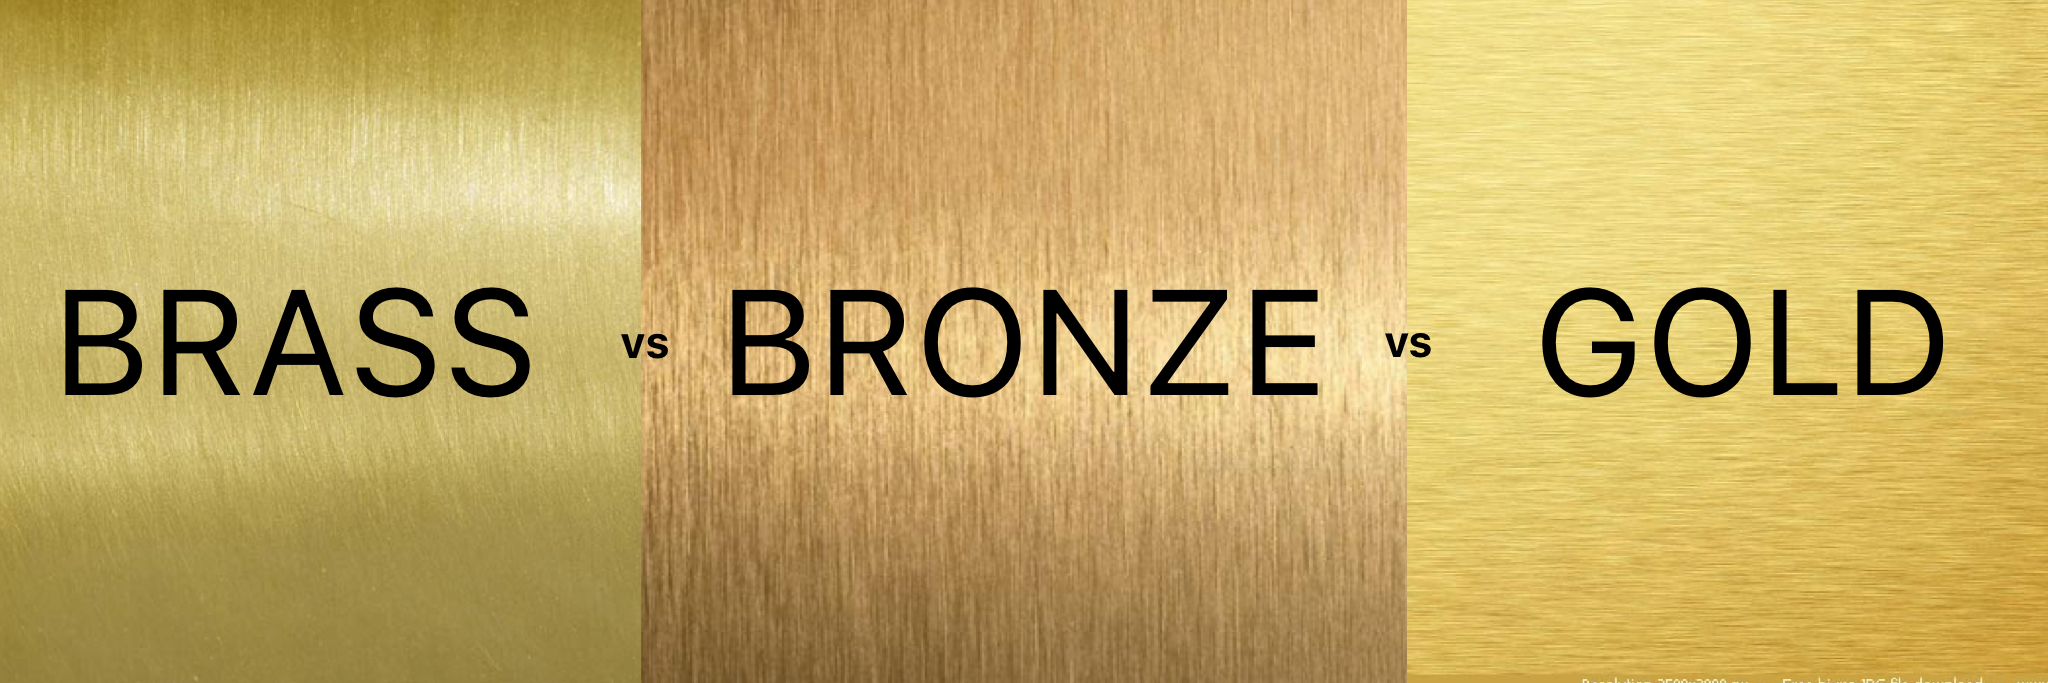 Brass vs Bronze vs Gold by Albie Knows Interior Design + Content